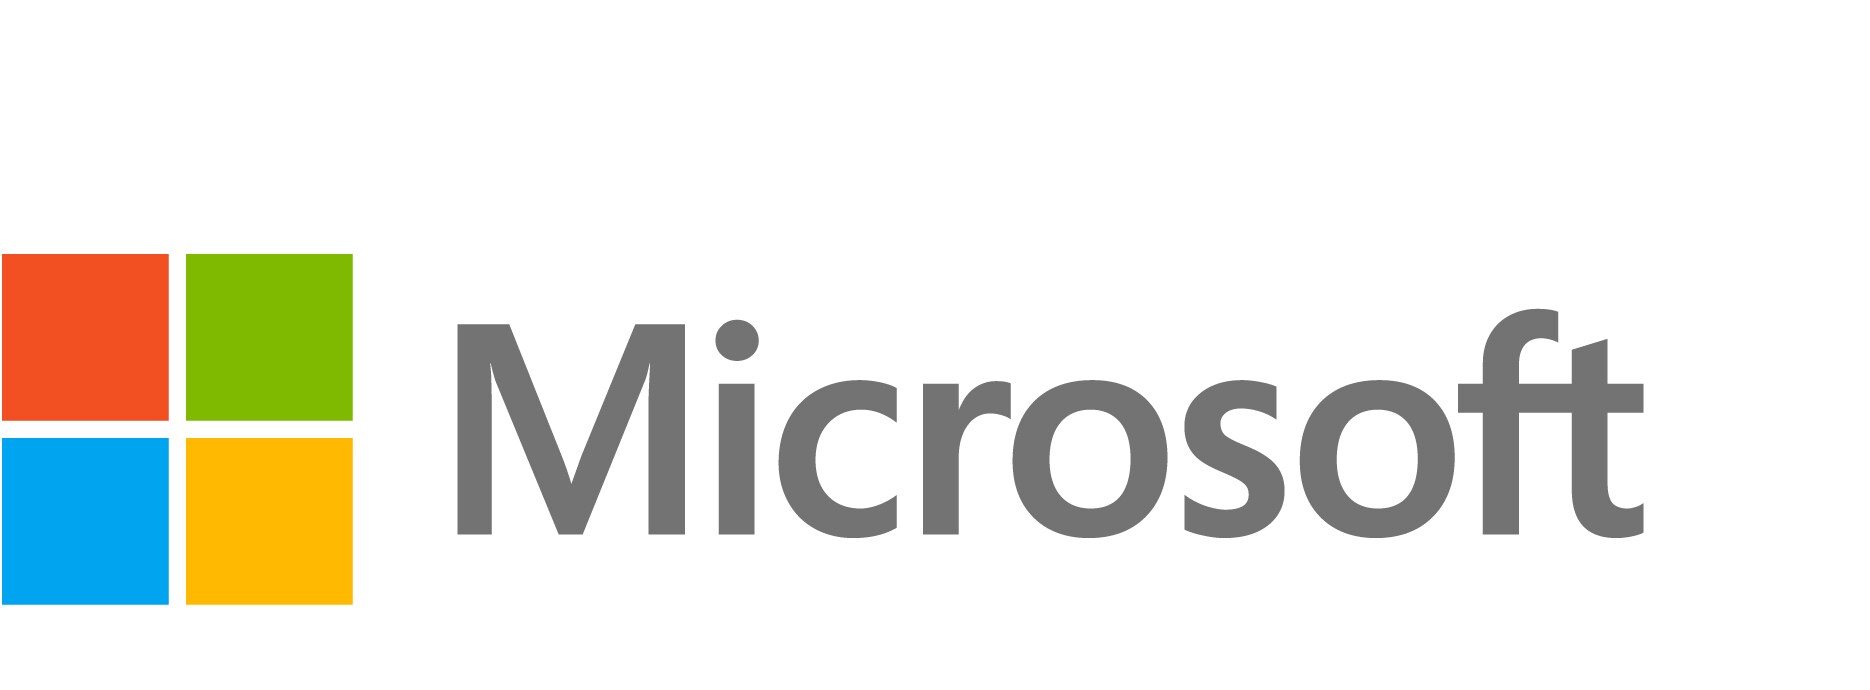 Windows 10/11 Enterprise A3 - subscription license (1 month) - 1 license